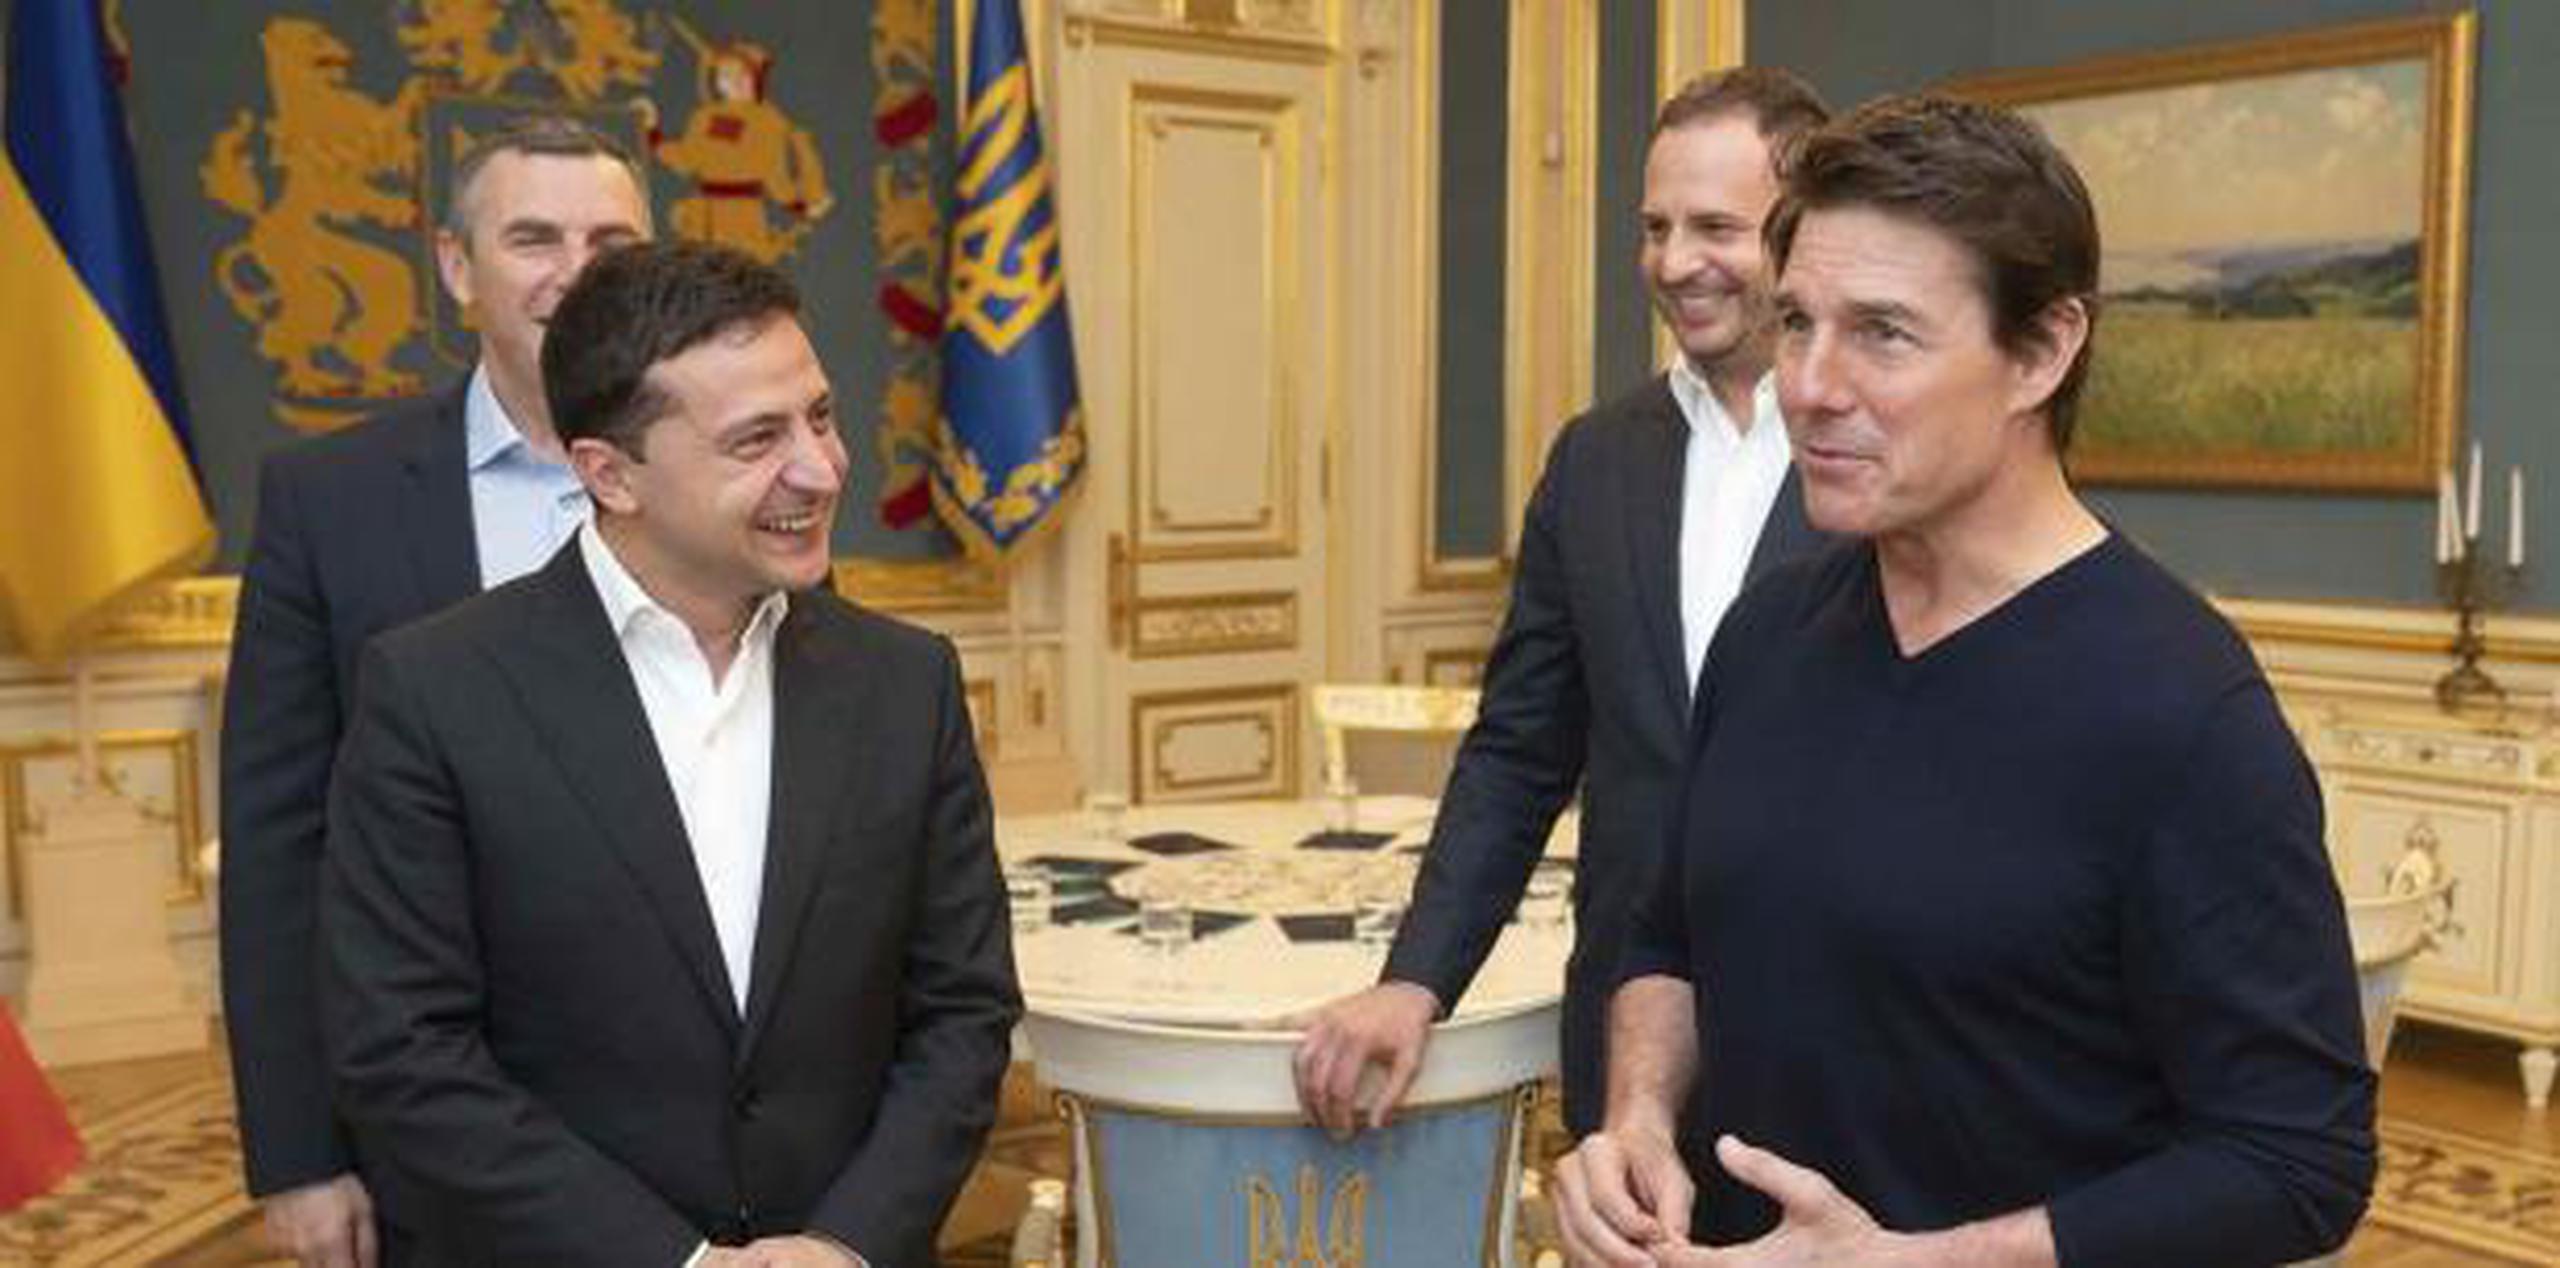 El presidente Volodymyr Zelenskiy y el astro de cine Tom Cruise conversaron durante su encuentro en Kiev. (Oficina de Prensa Presidencial de Ucrania vía AP)